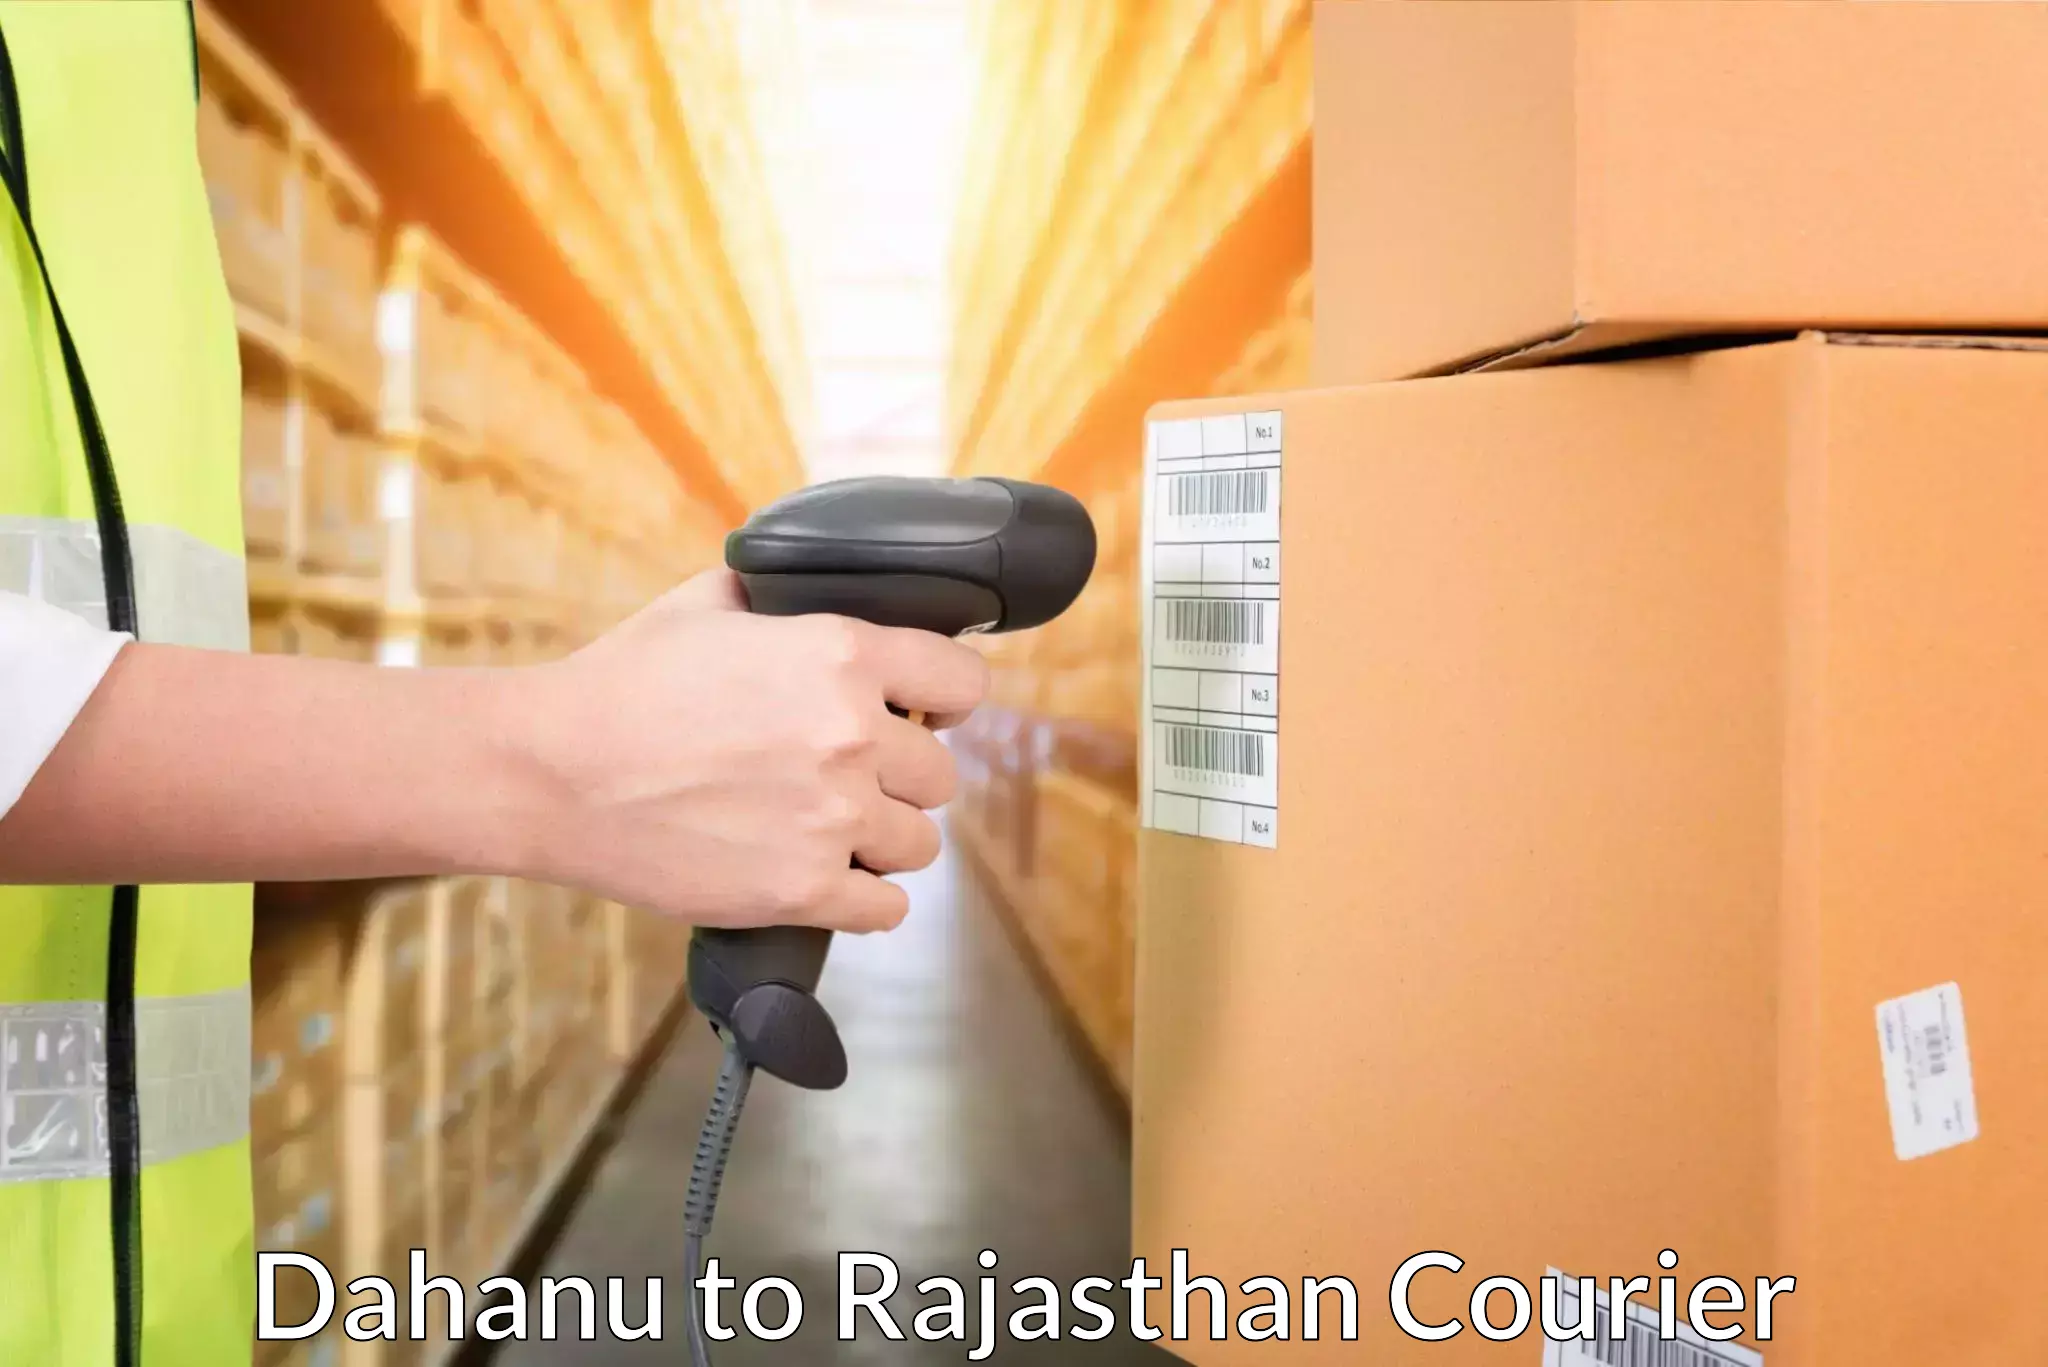 Reliable logistics providers Dahanu to Nohar